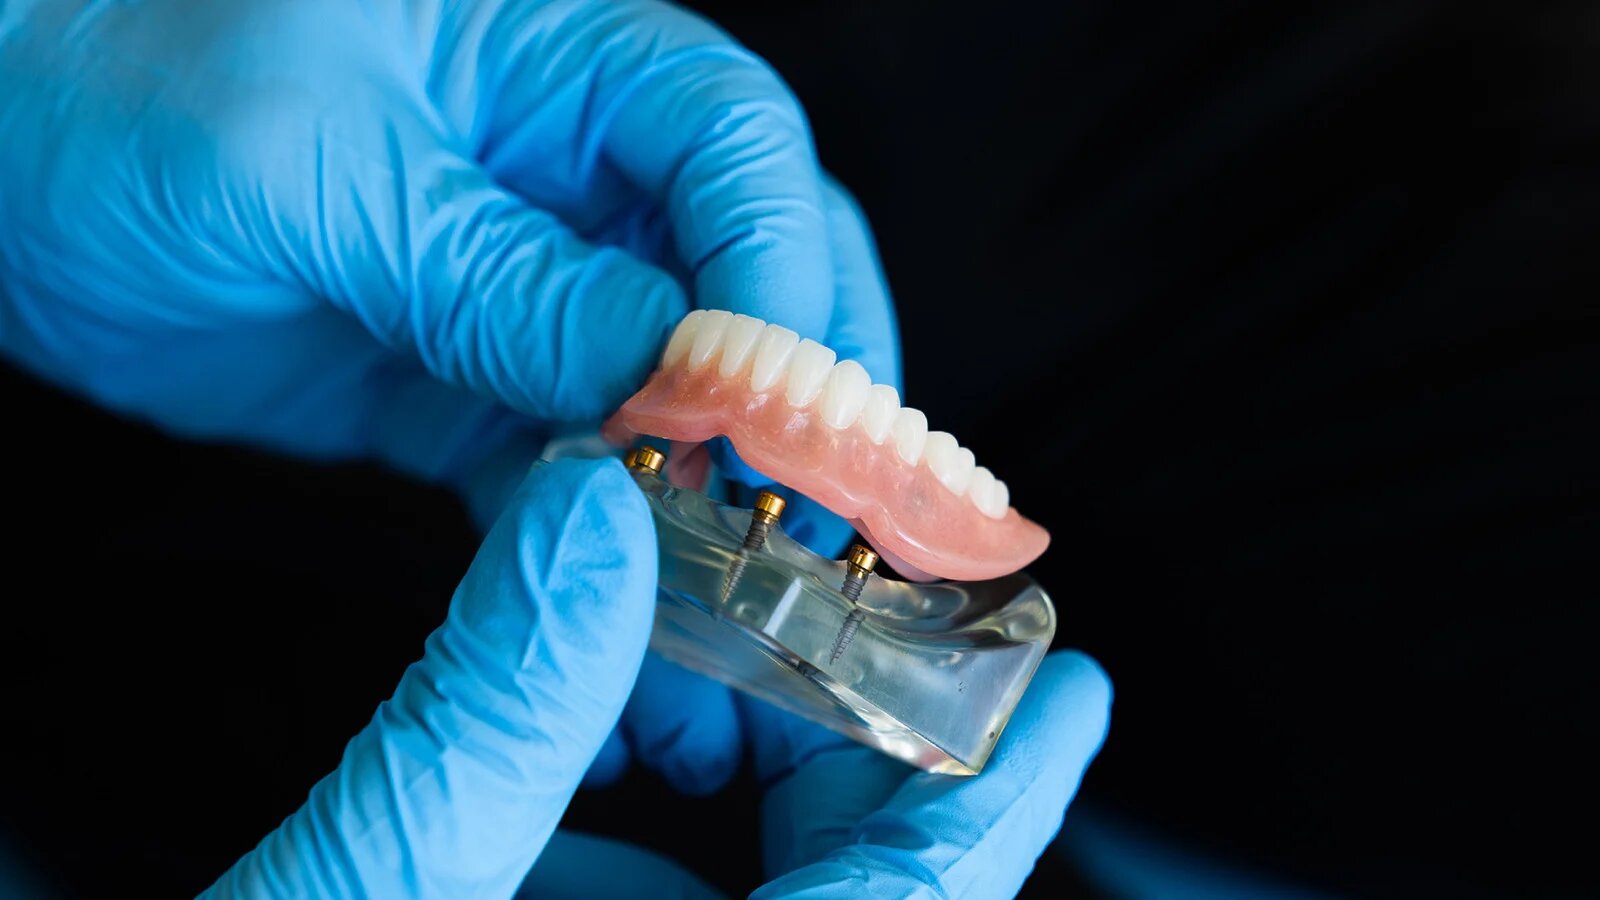 Zahnersatz: Was bei der Mundhygiene zu beachten ist